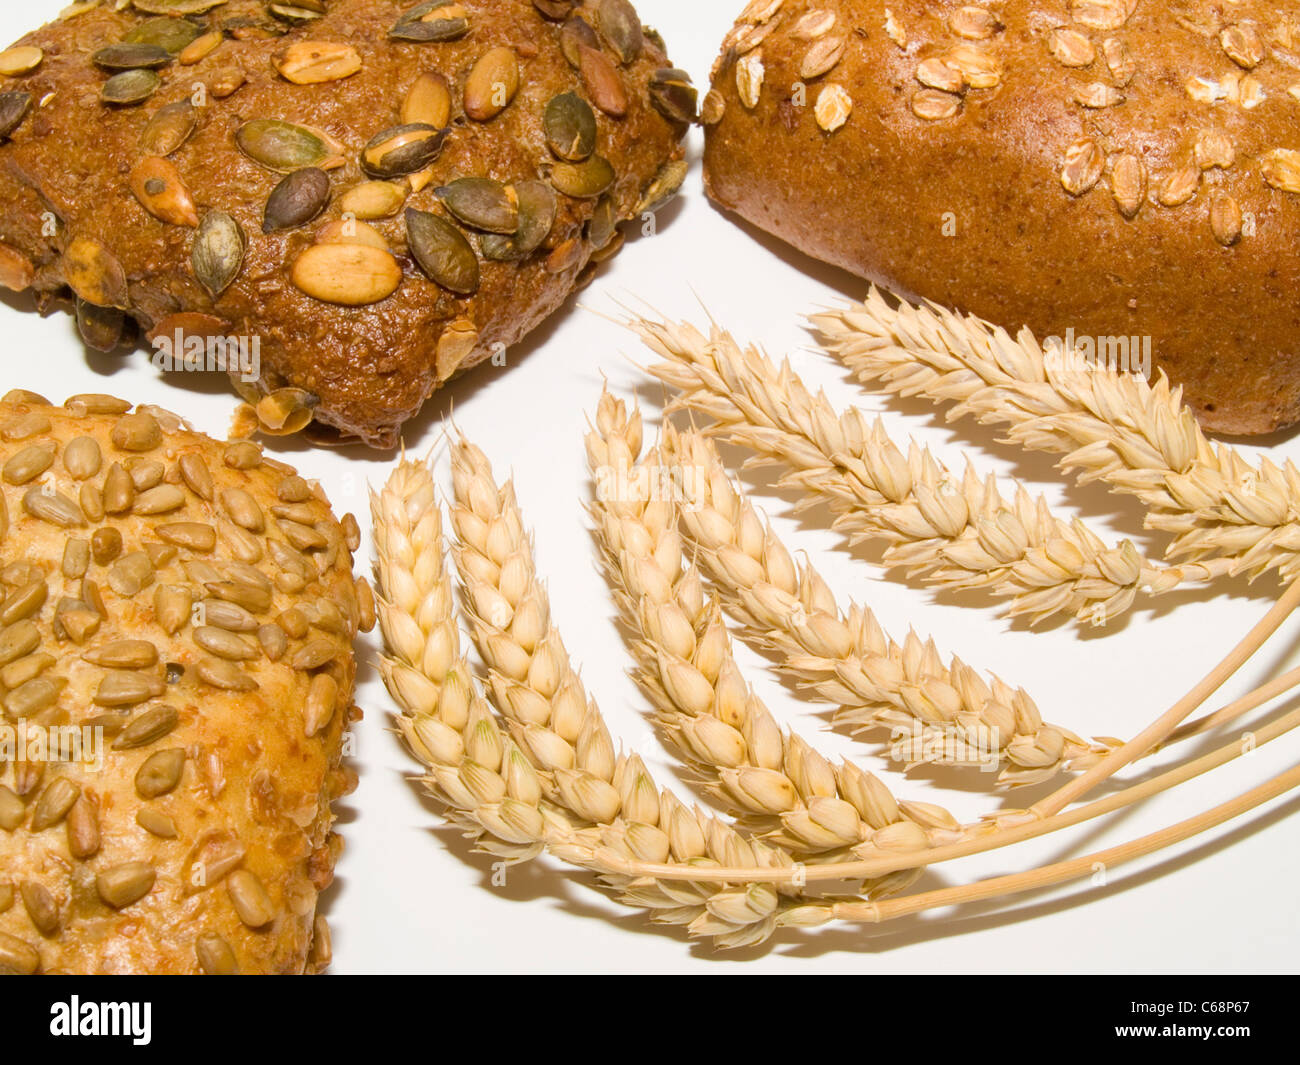 verschiedene Brötchen, davor liegen Weizenähren | different rolls, in front are wheat ears Stock Photo